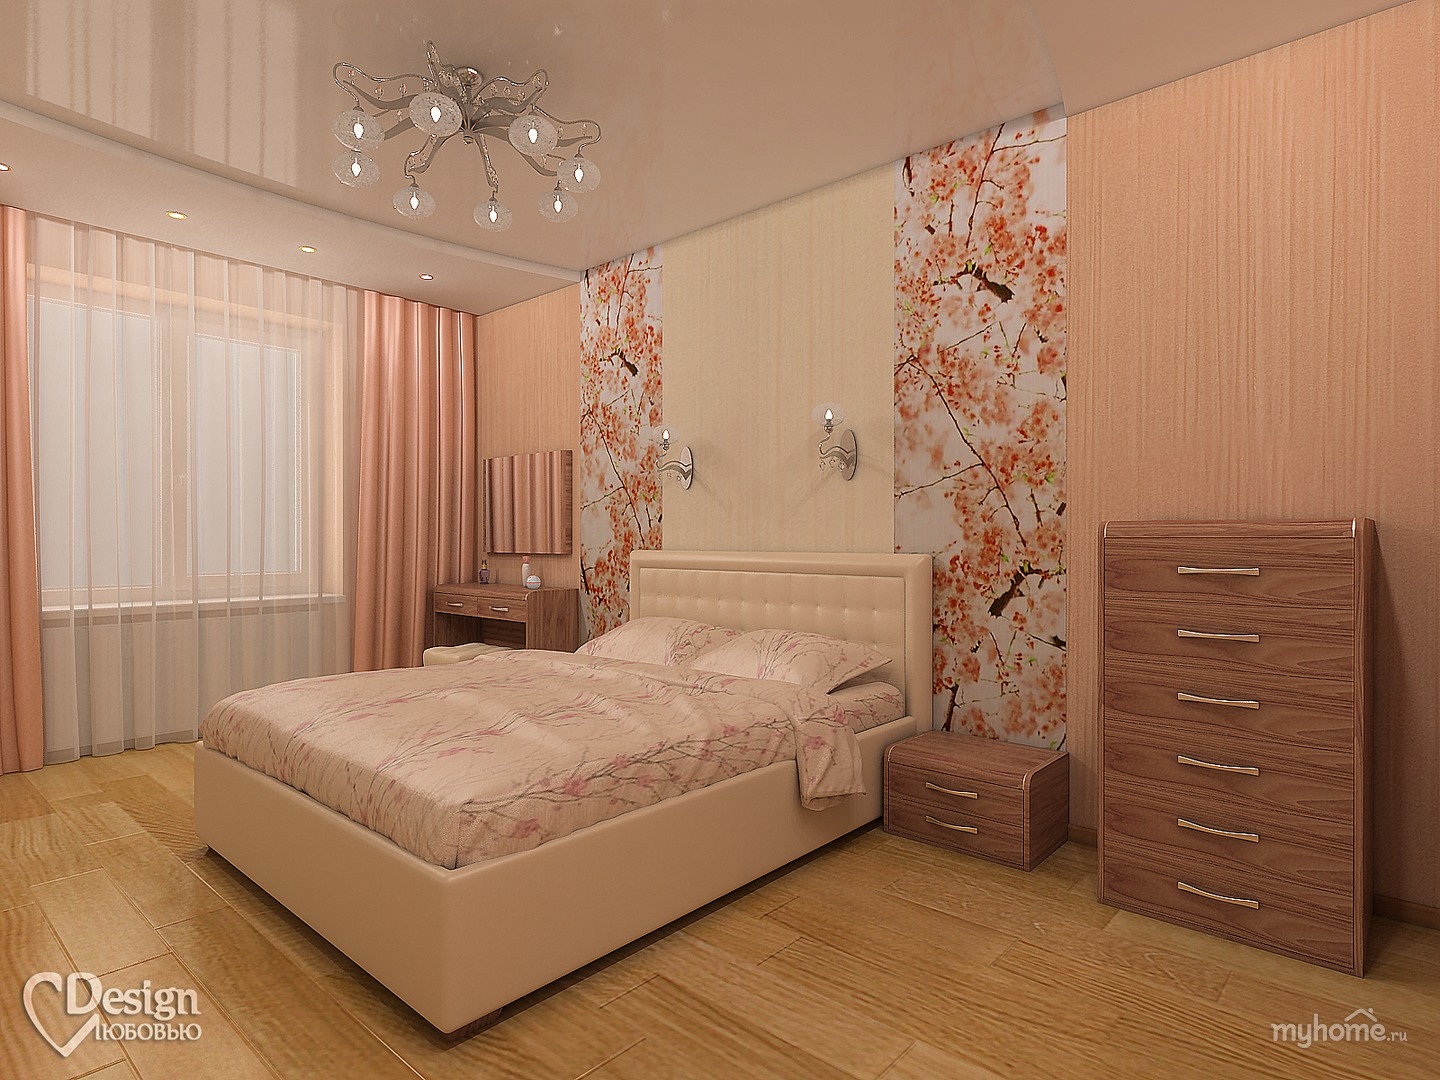 дизайн персиковой спальни фото